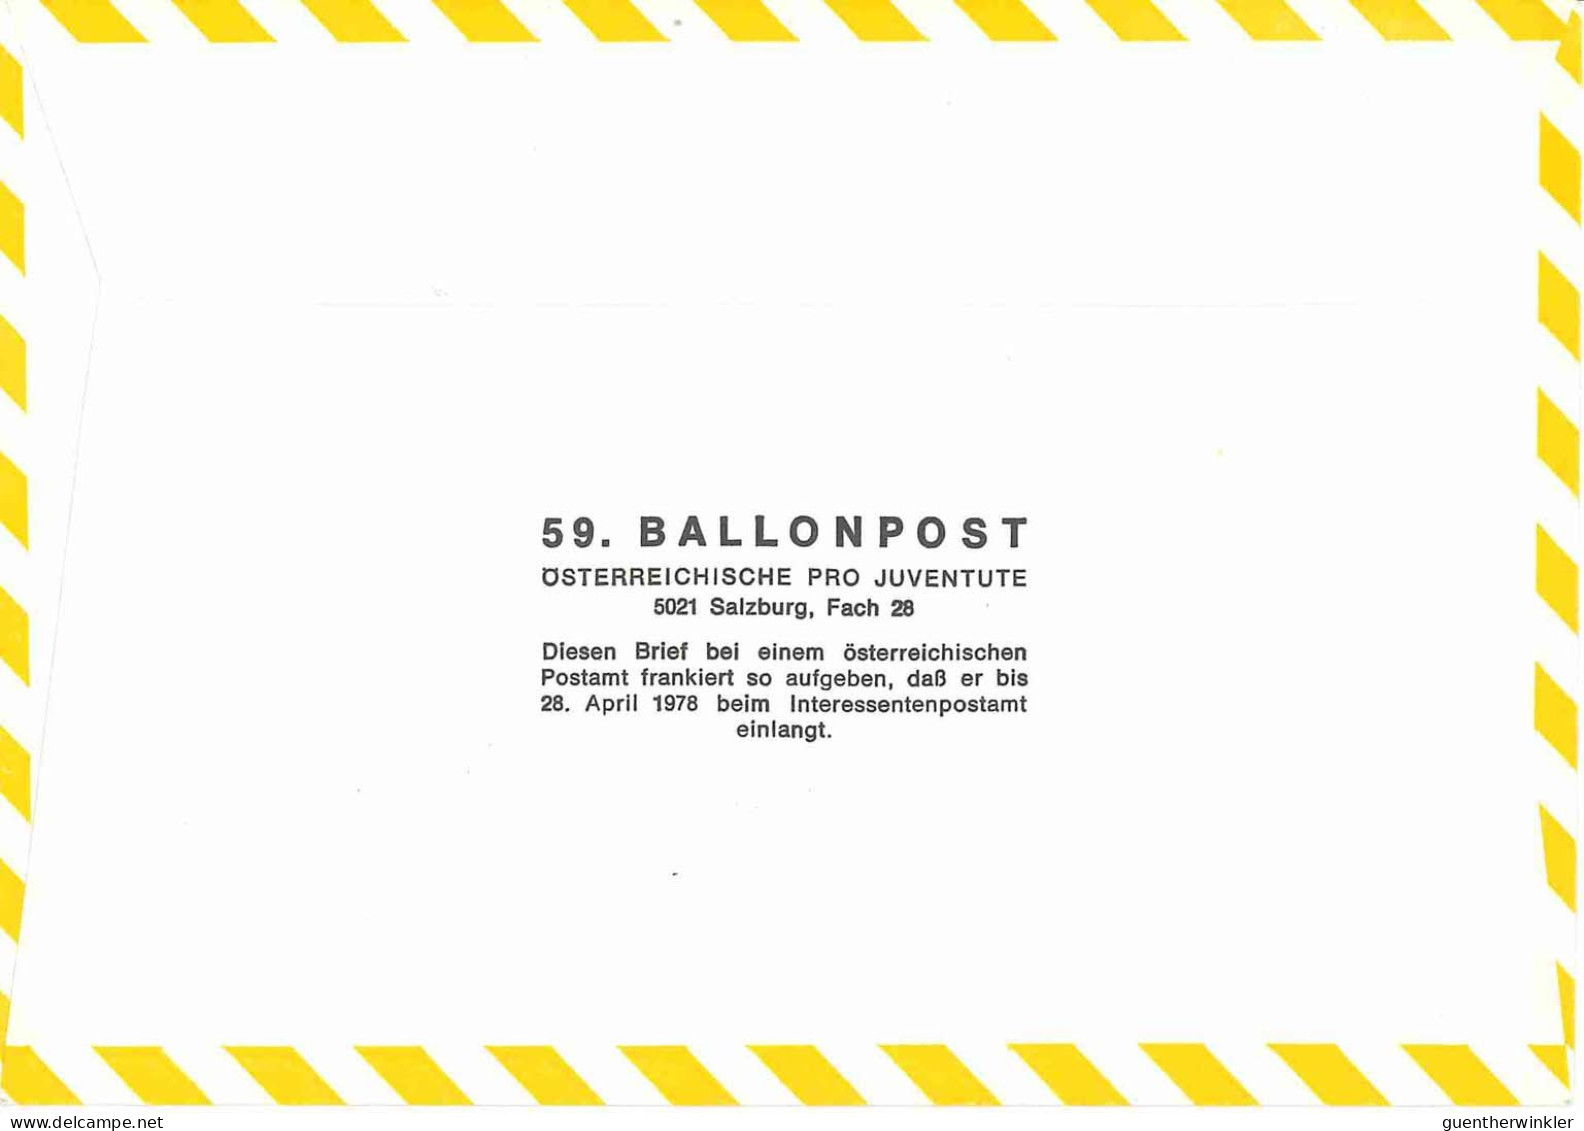 Regulärer Ballonpostflug Nr. 59a Der Pro Juventute [RBP59a] - Ballons